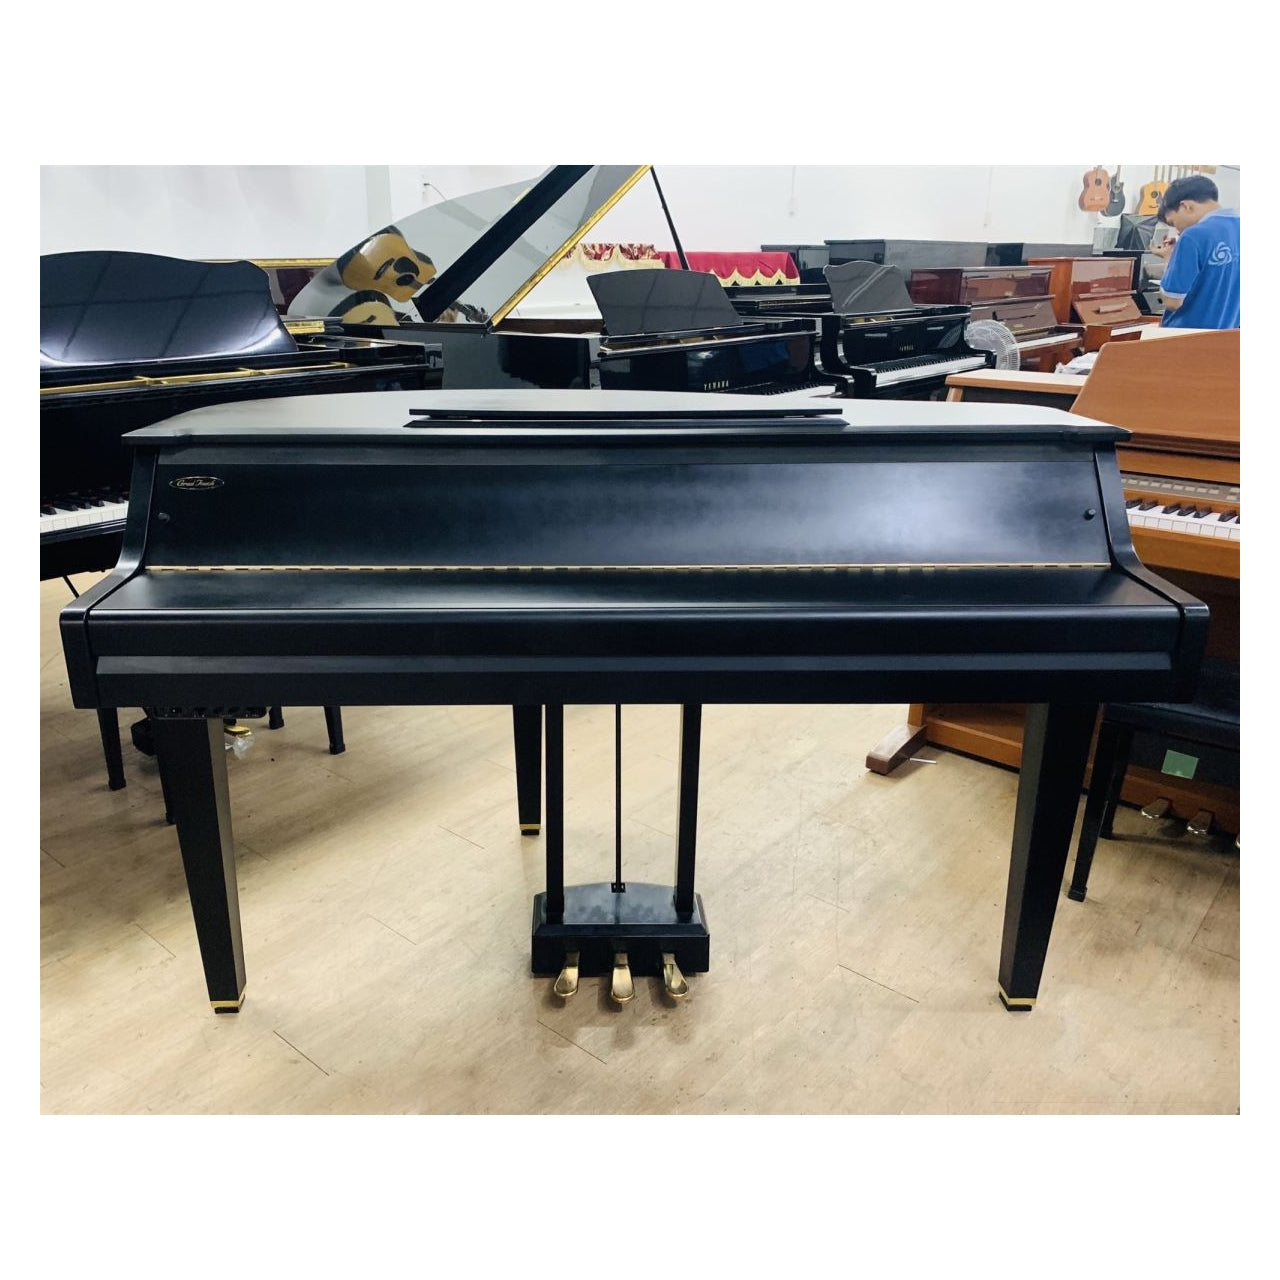 Đàn Piano Điện Yamaha DGP1 - Qua Sử Dụng